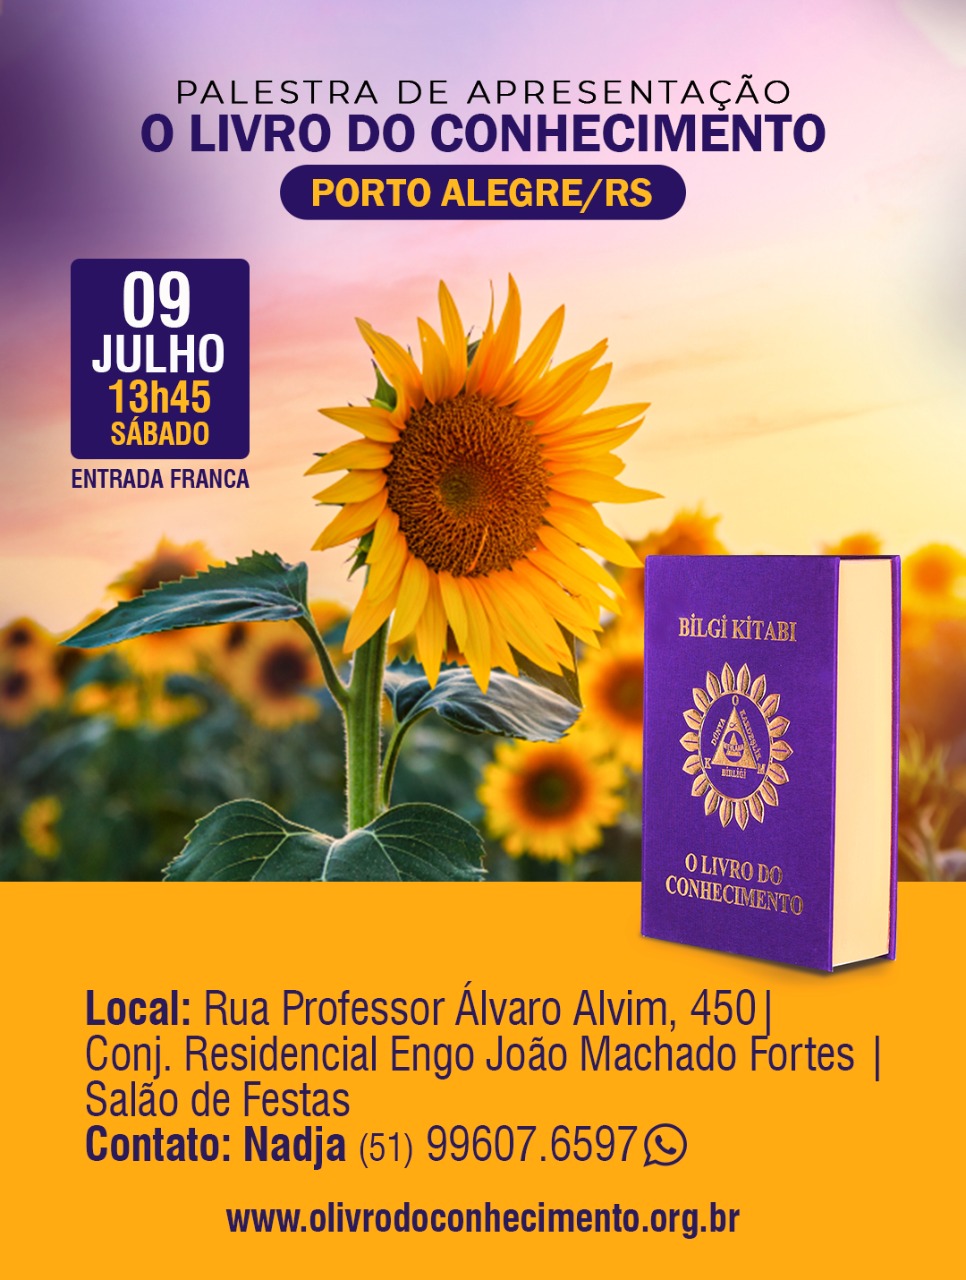 PORTO ALEGRE/RS - 09/07/2022